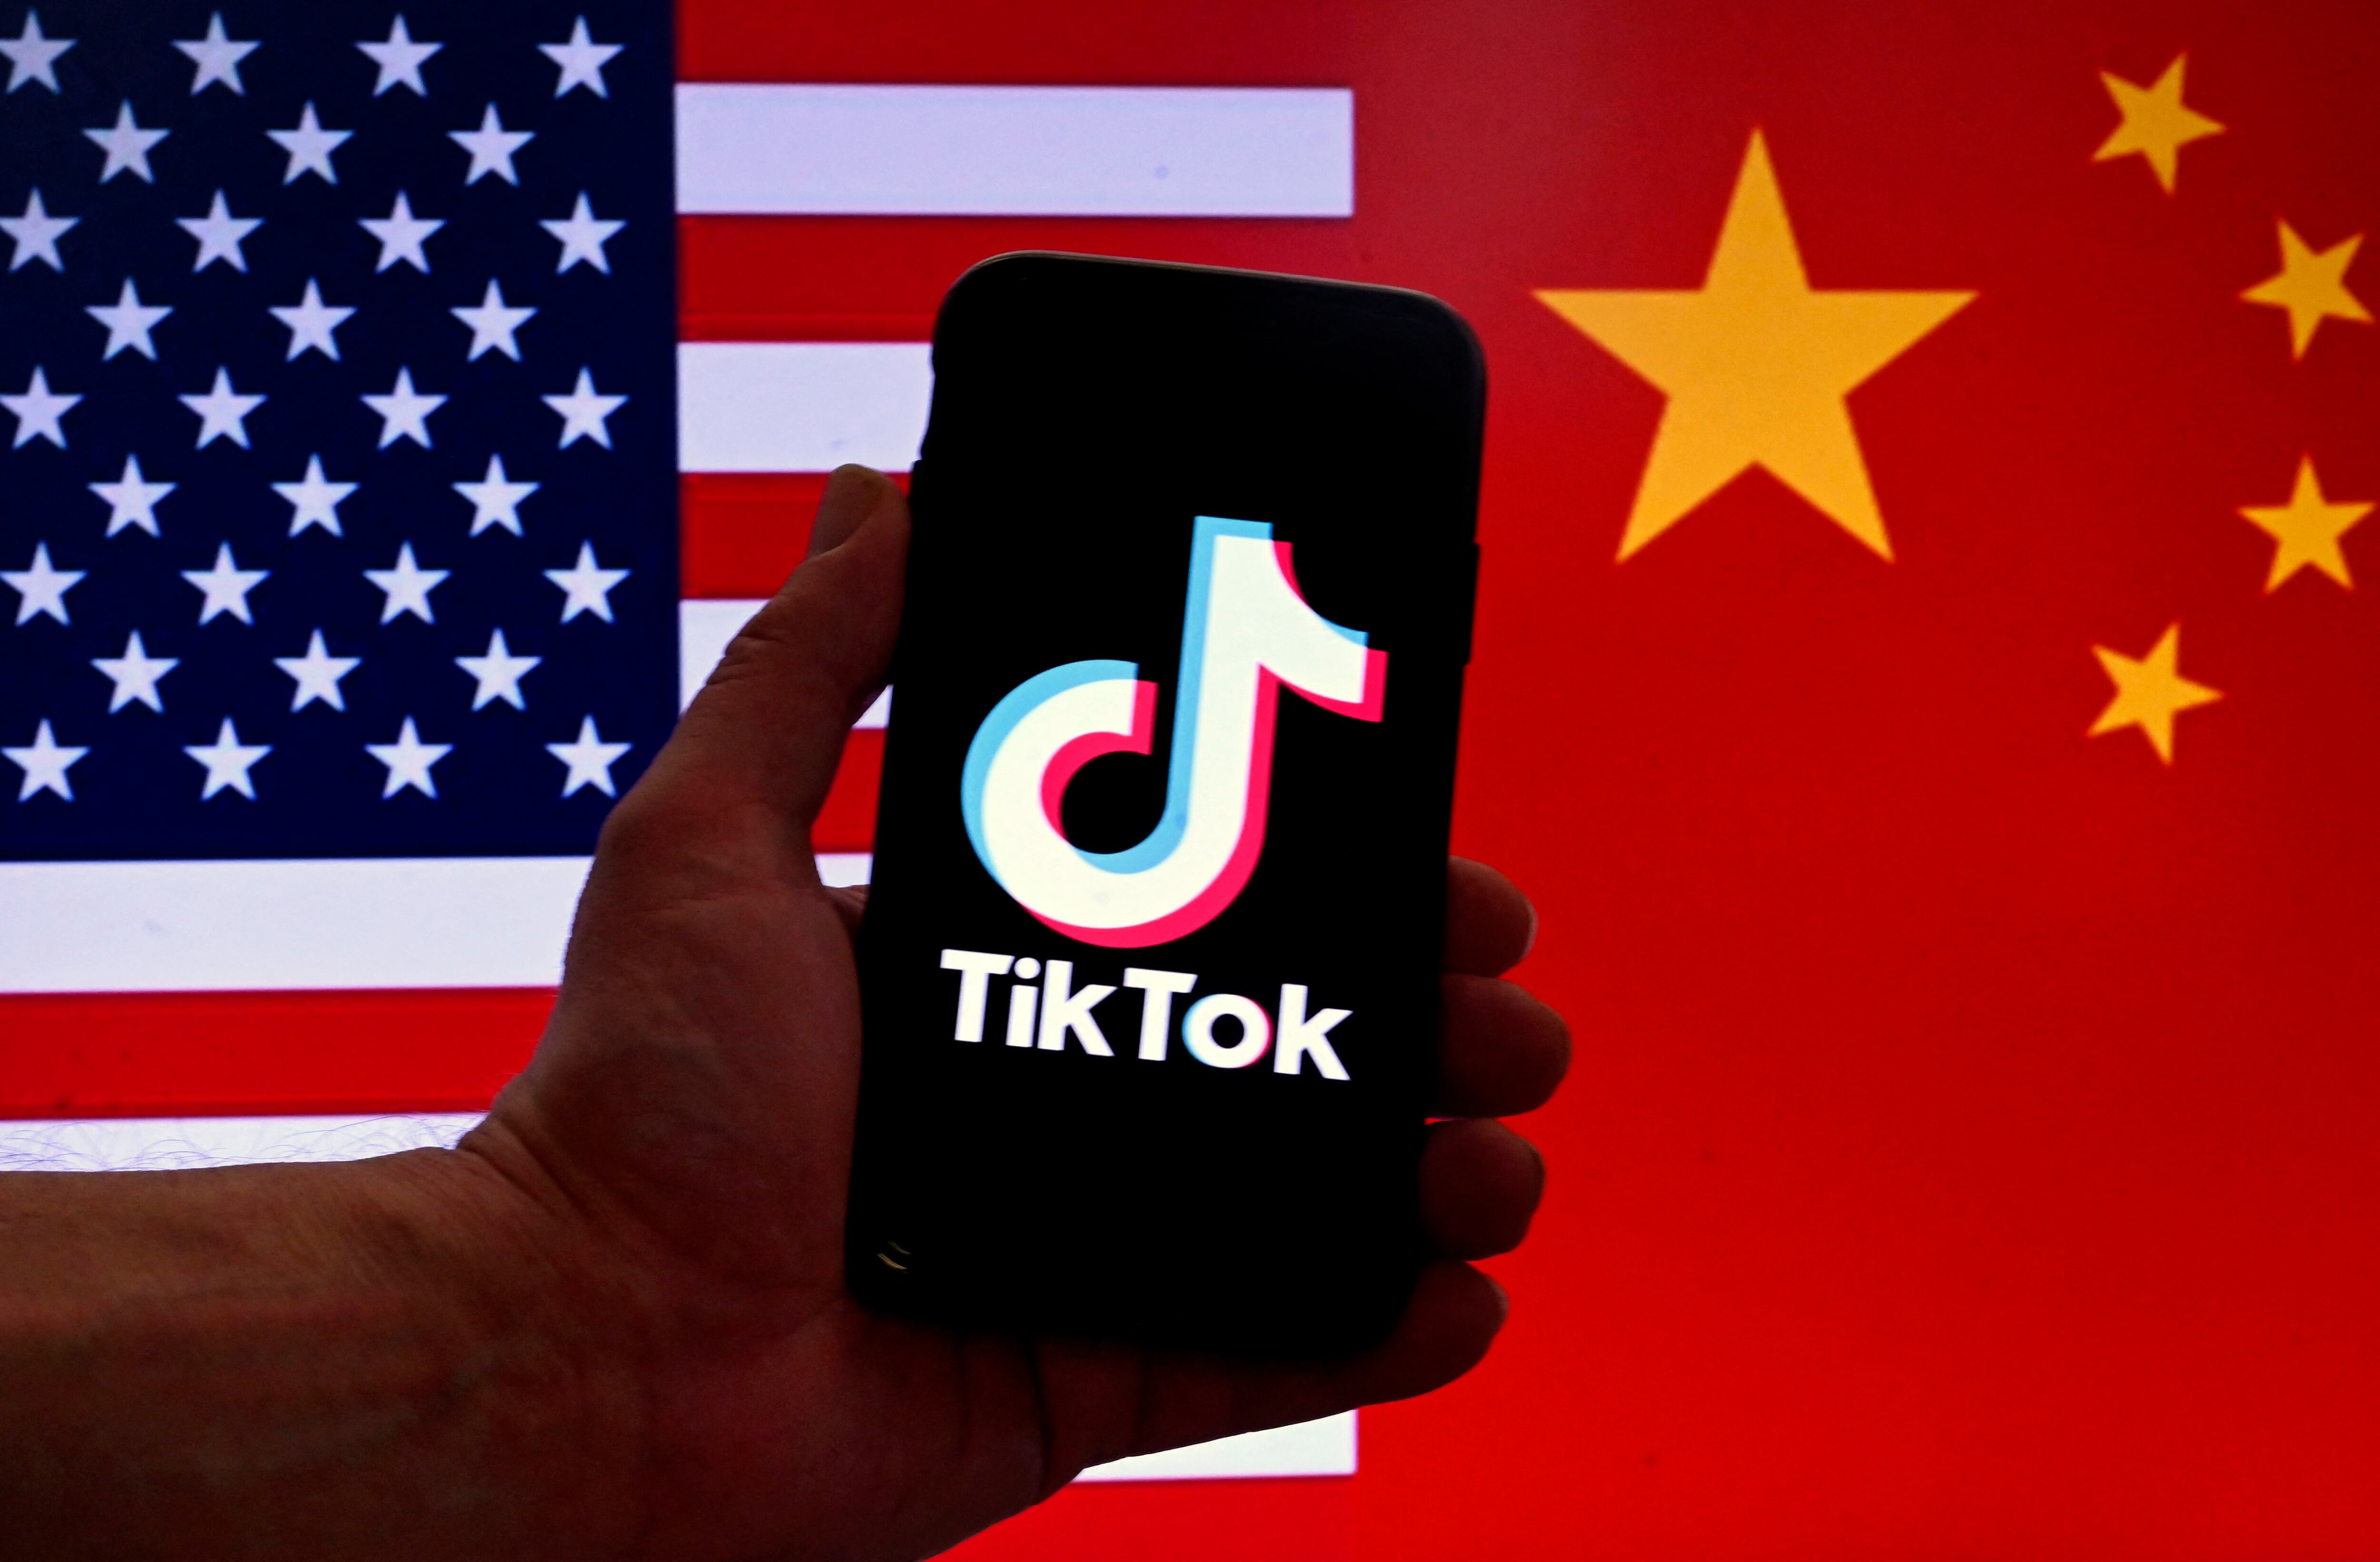 La incertidumbre sobre el futuro de TikTok, en medio de disputas geopolíticas, genera interrogantes sobre la privacidad en línea y la libertad de expresión en la era digital para millones de usuarios en Estados Unidos.